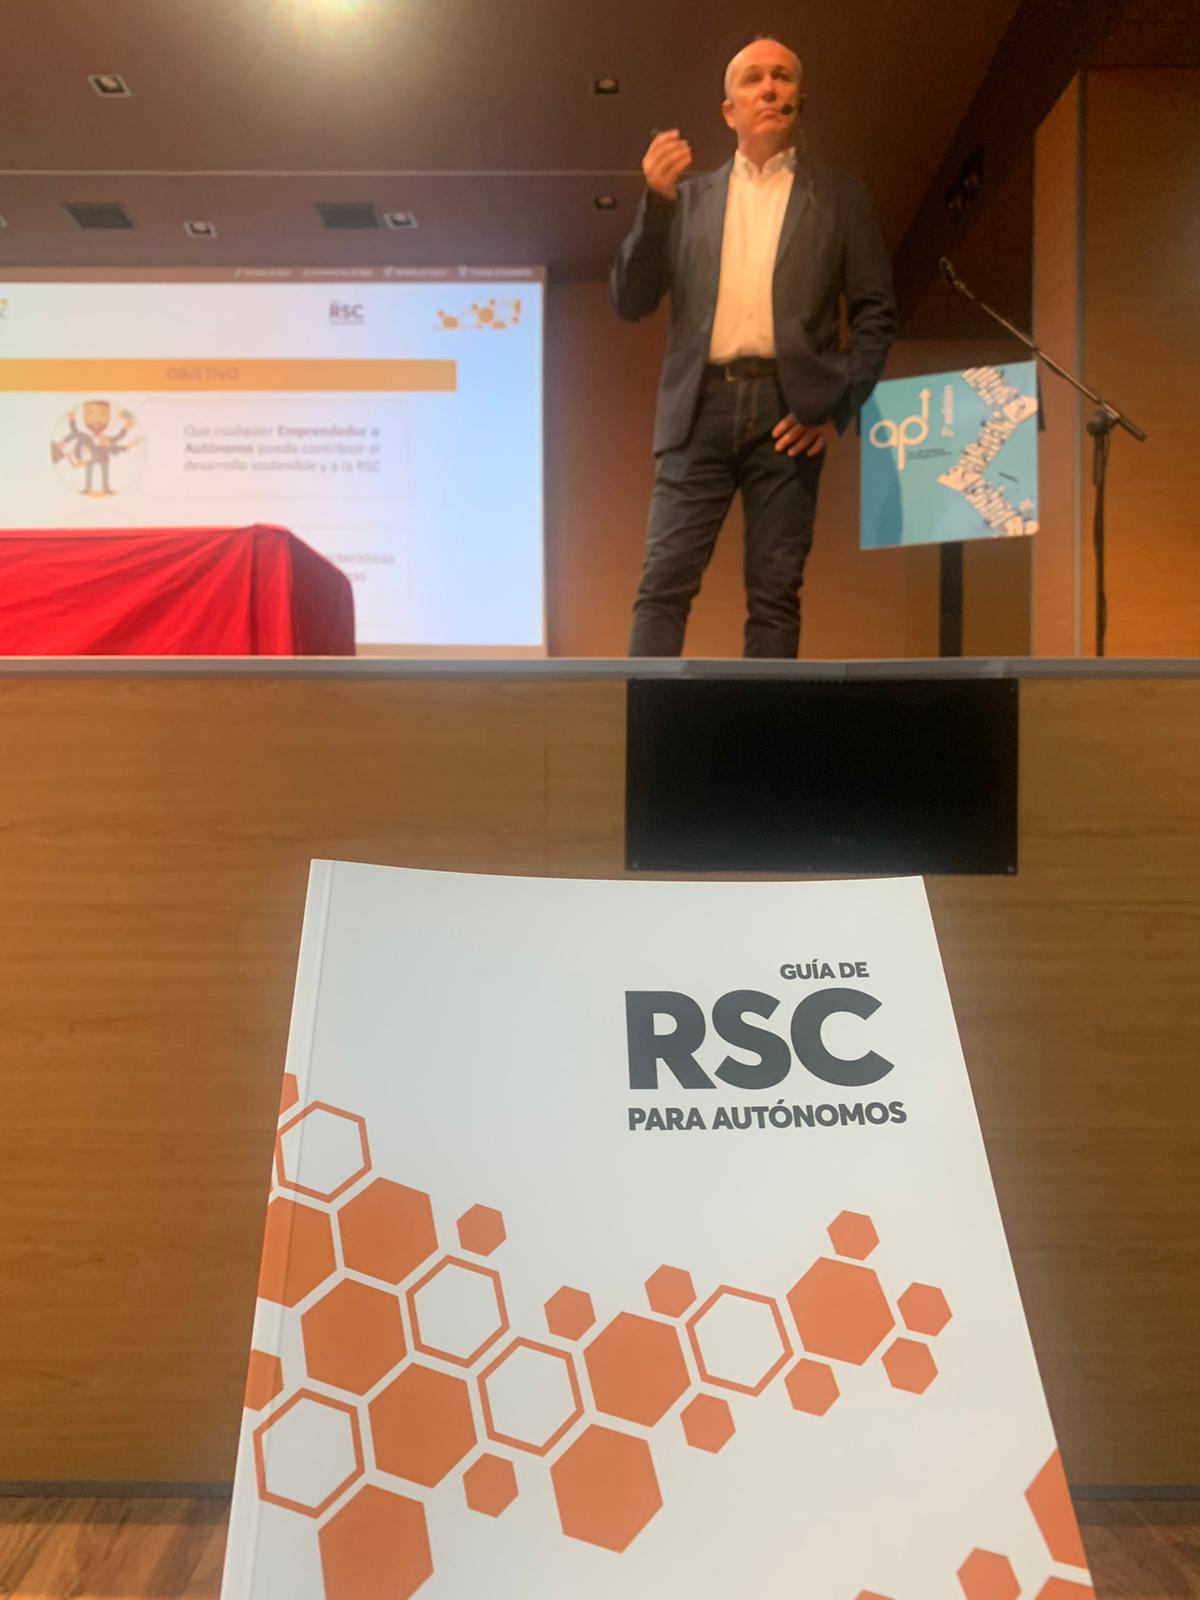 Longinos Marín, Director de la Cátedra de RSC de la Universidad de Murcia, presentando la Guía de RSC en Autónomos